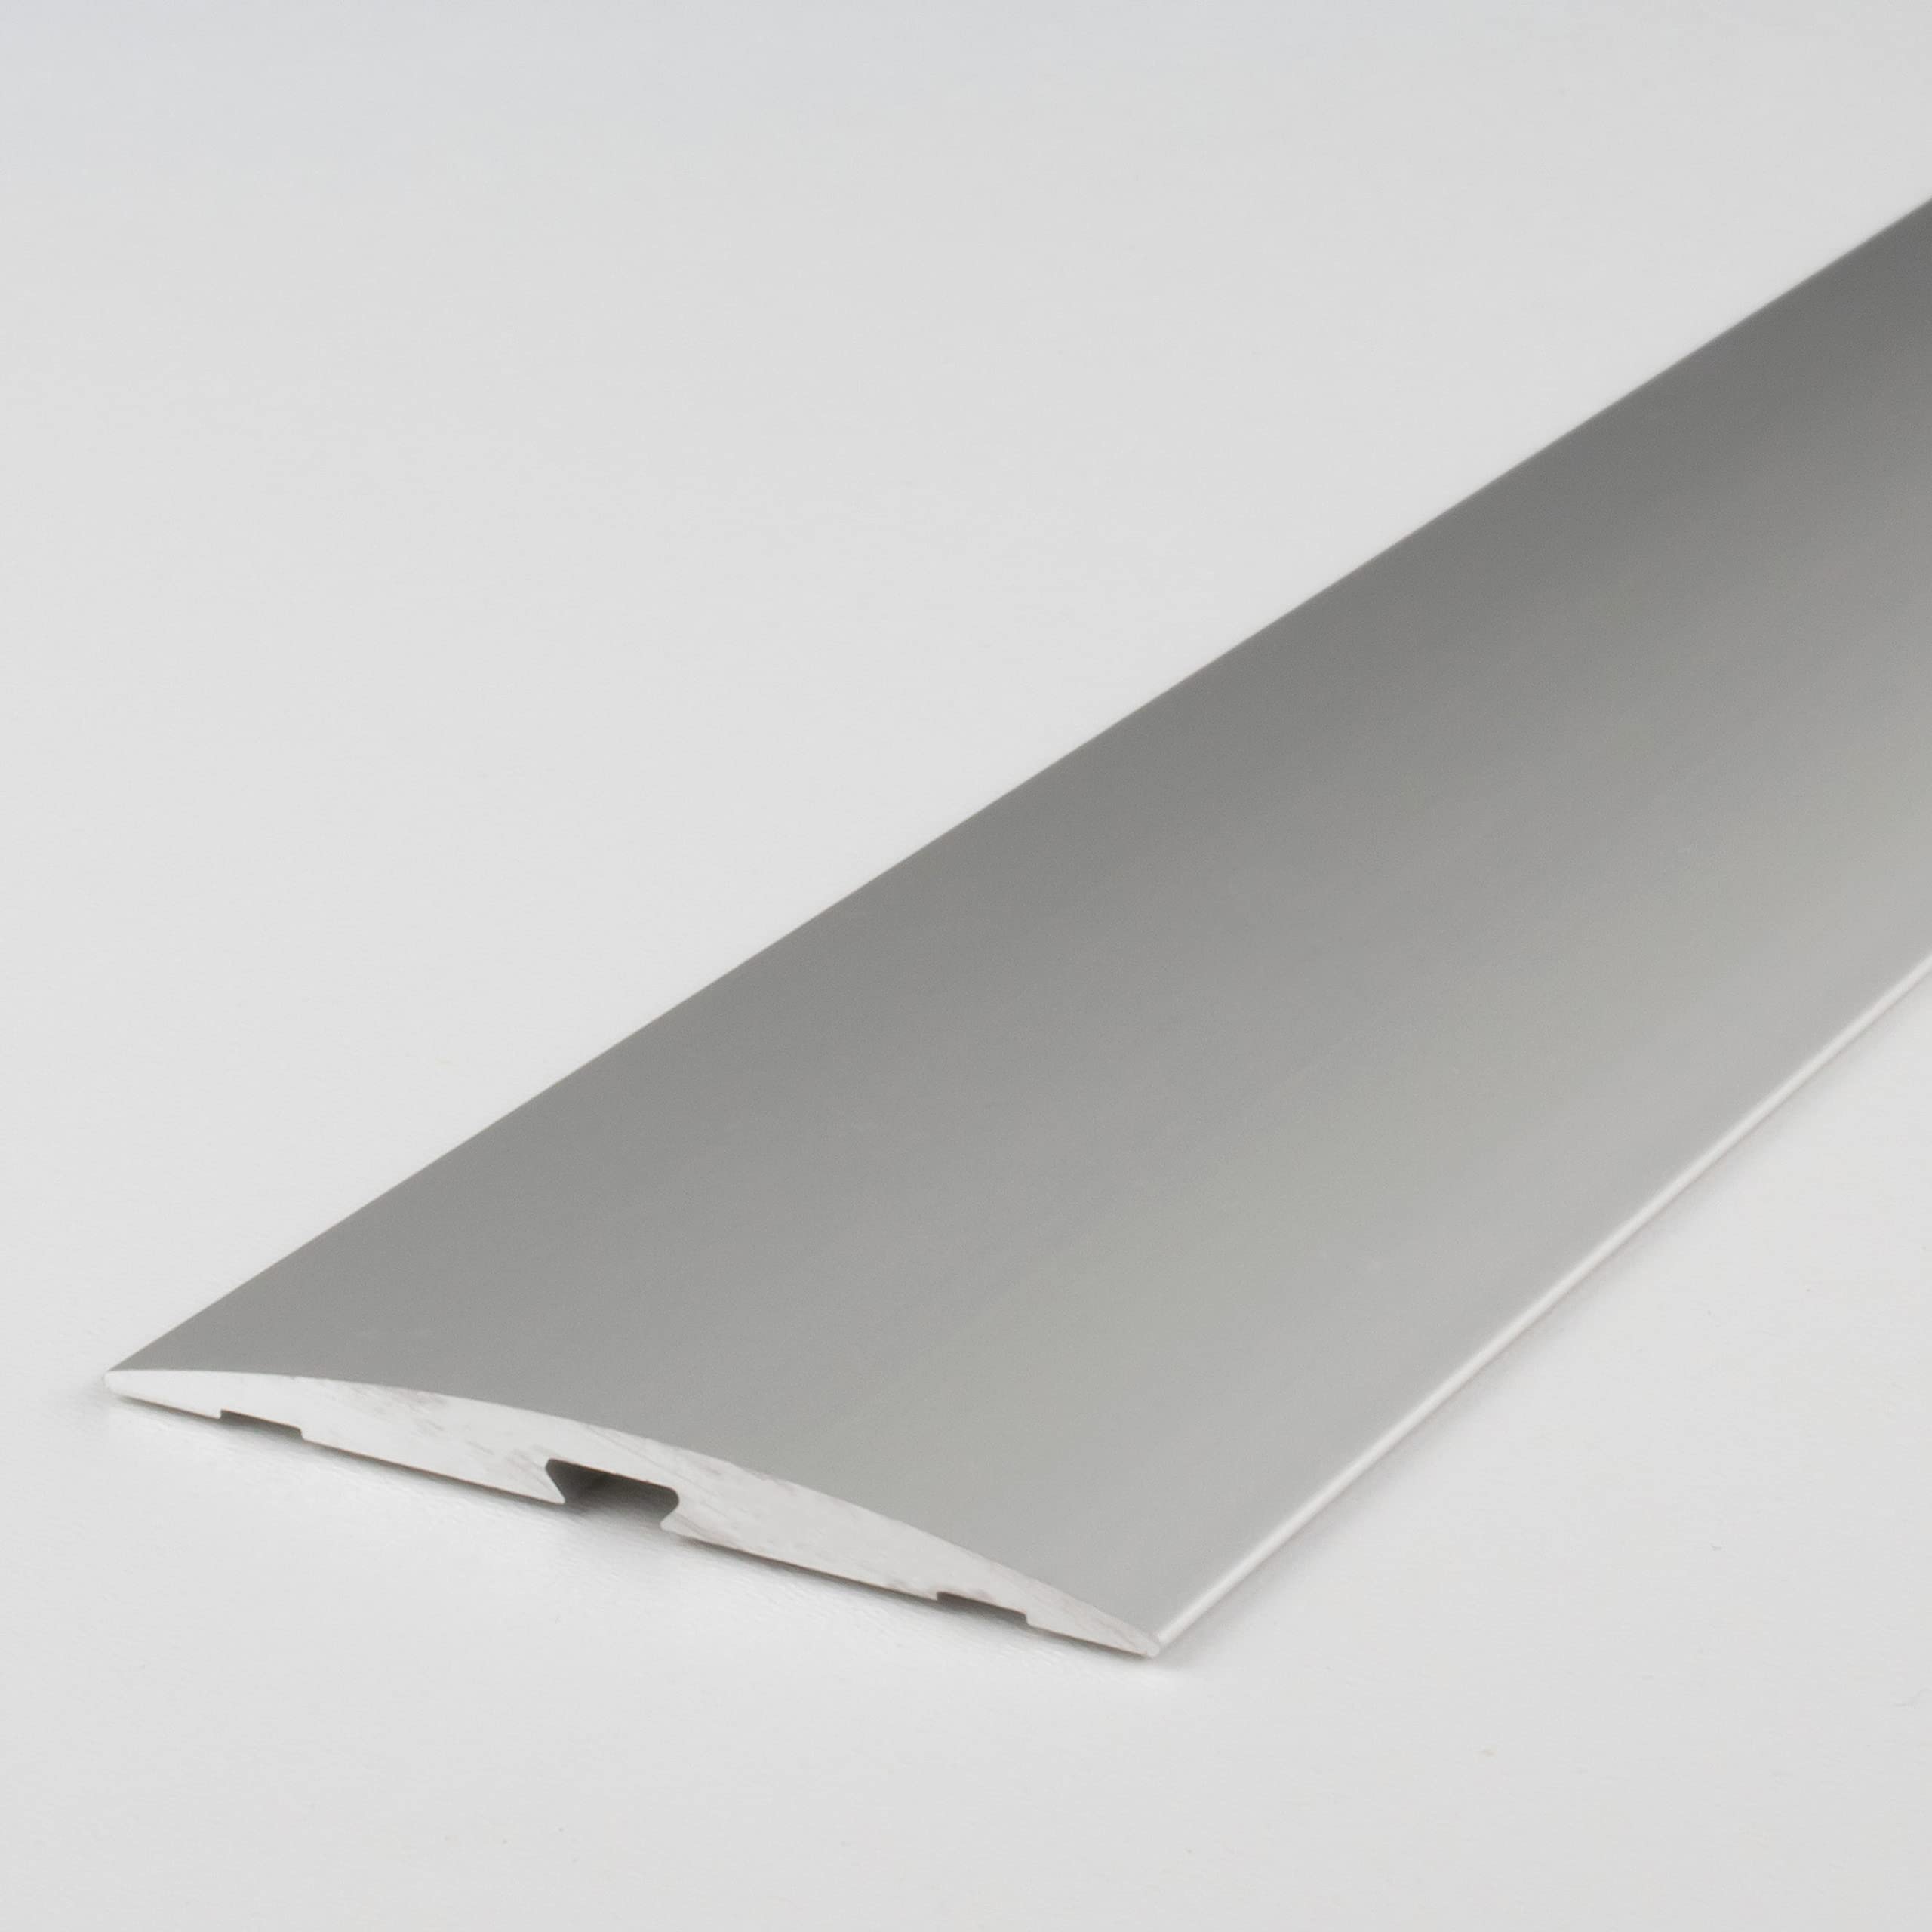 Übergangsprofil | Übergangsschiene | Länge 1 m | Breite 50 mm | Aluminium | Selbstklebend | Silber | Typ 145